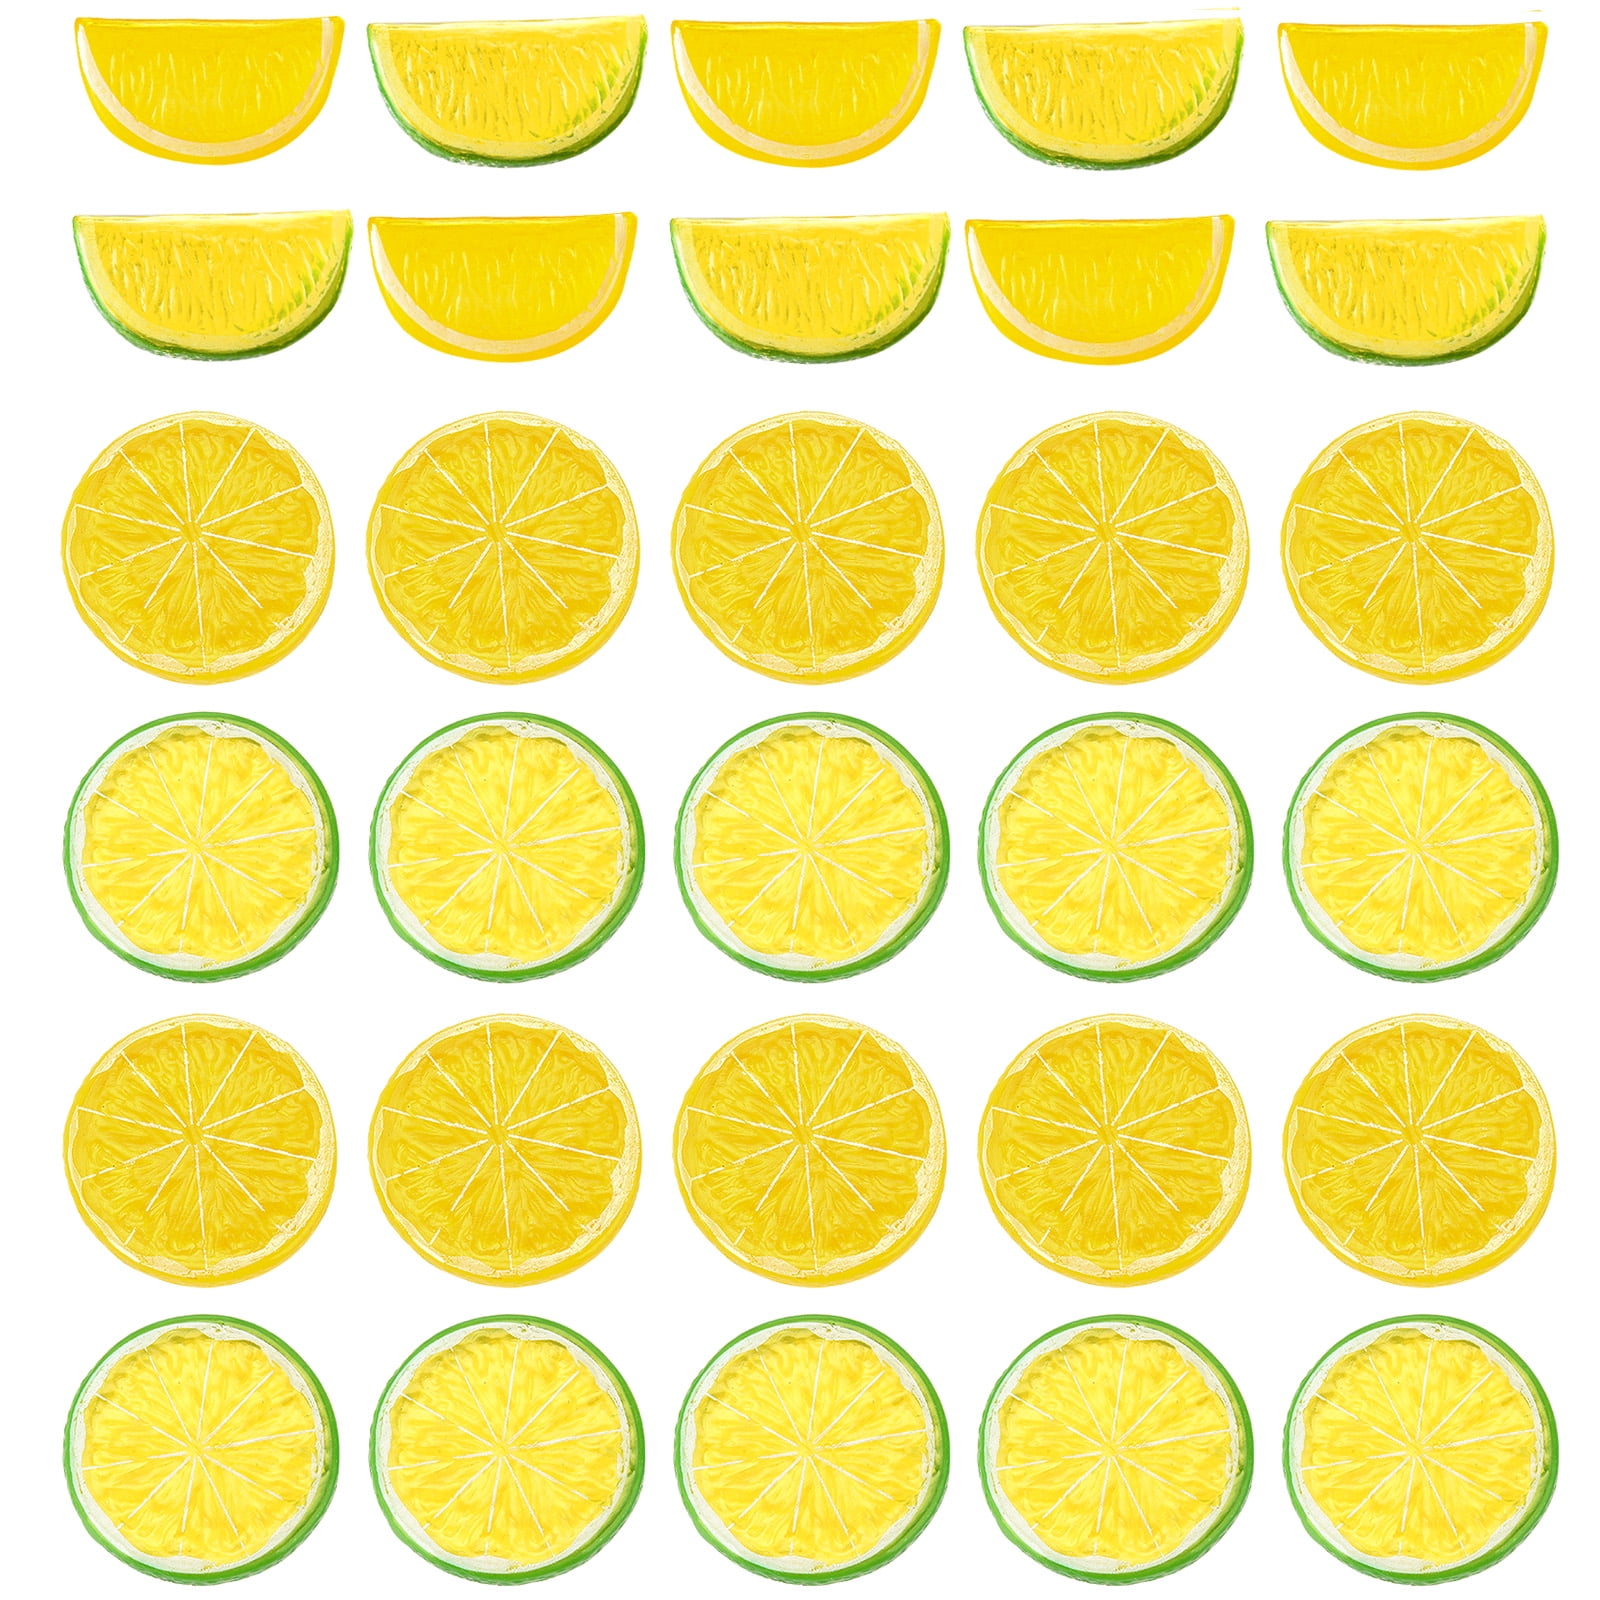 2/5/10pcs Artificial Lemon Slices Lifelike Plastic Fake Fruit Home Decor Props 